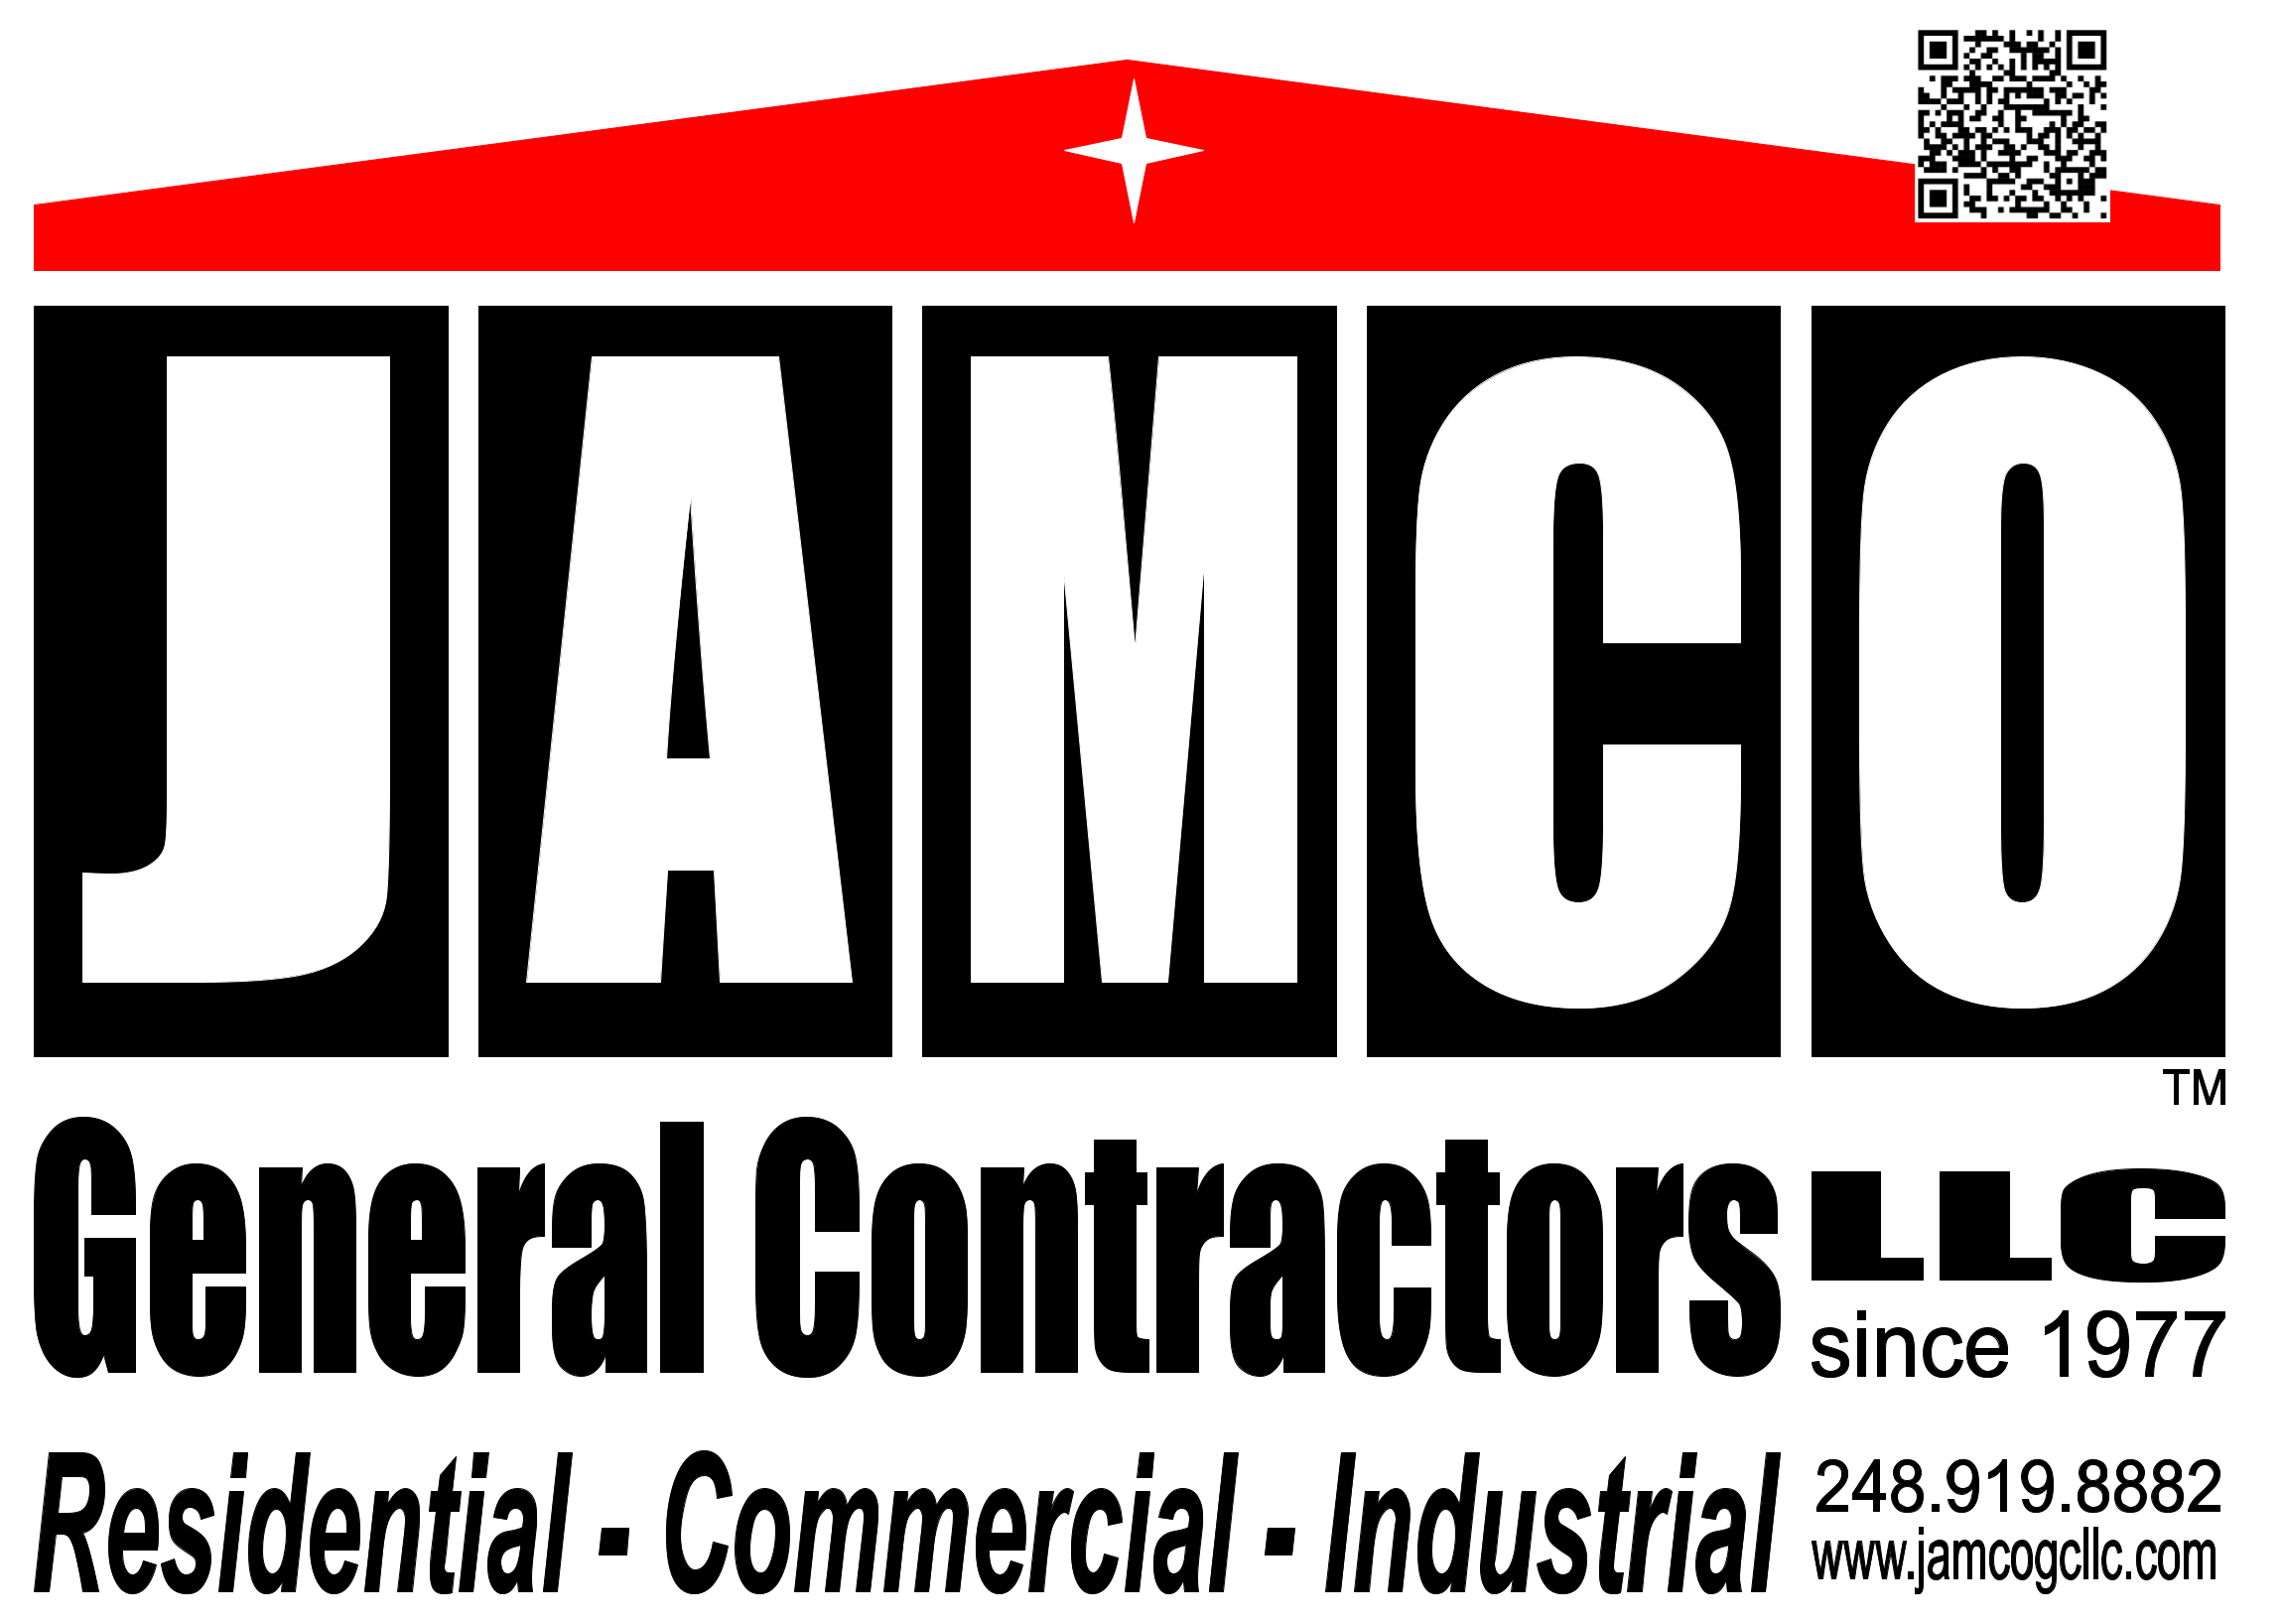 JAMCO GENERAL CONTRACTORS LLC